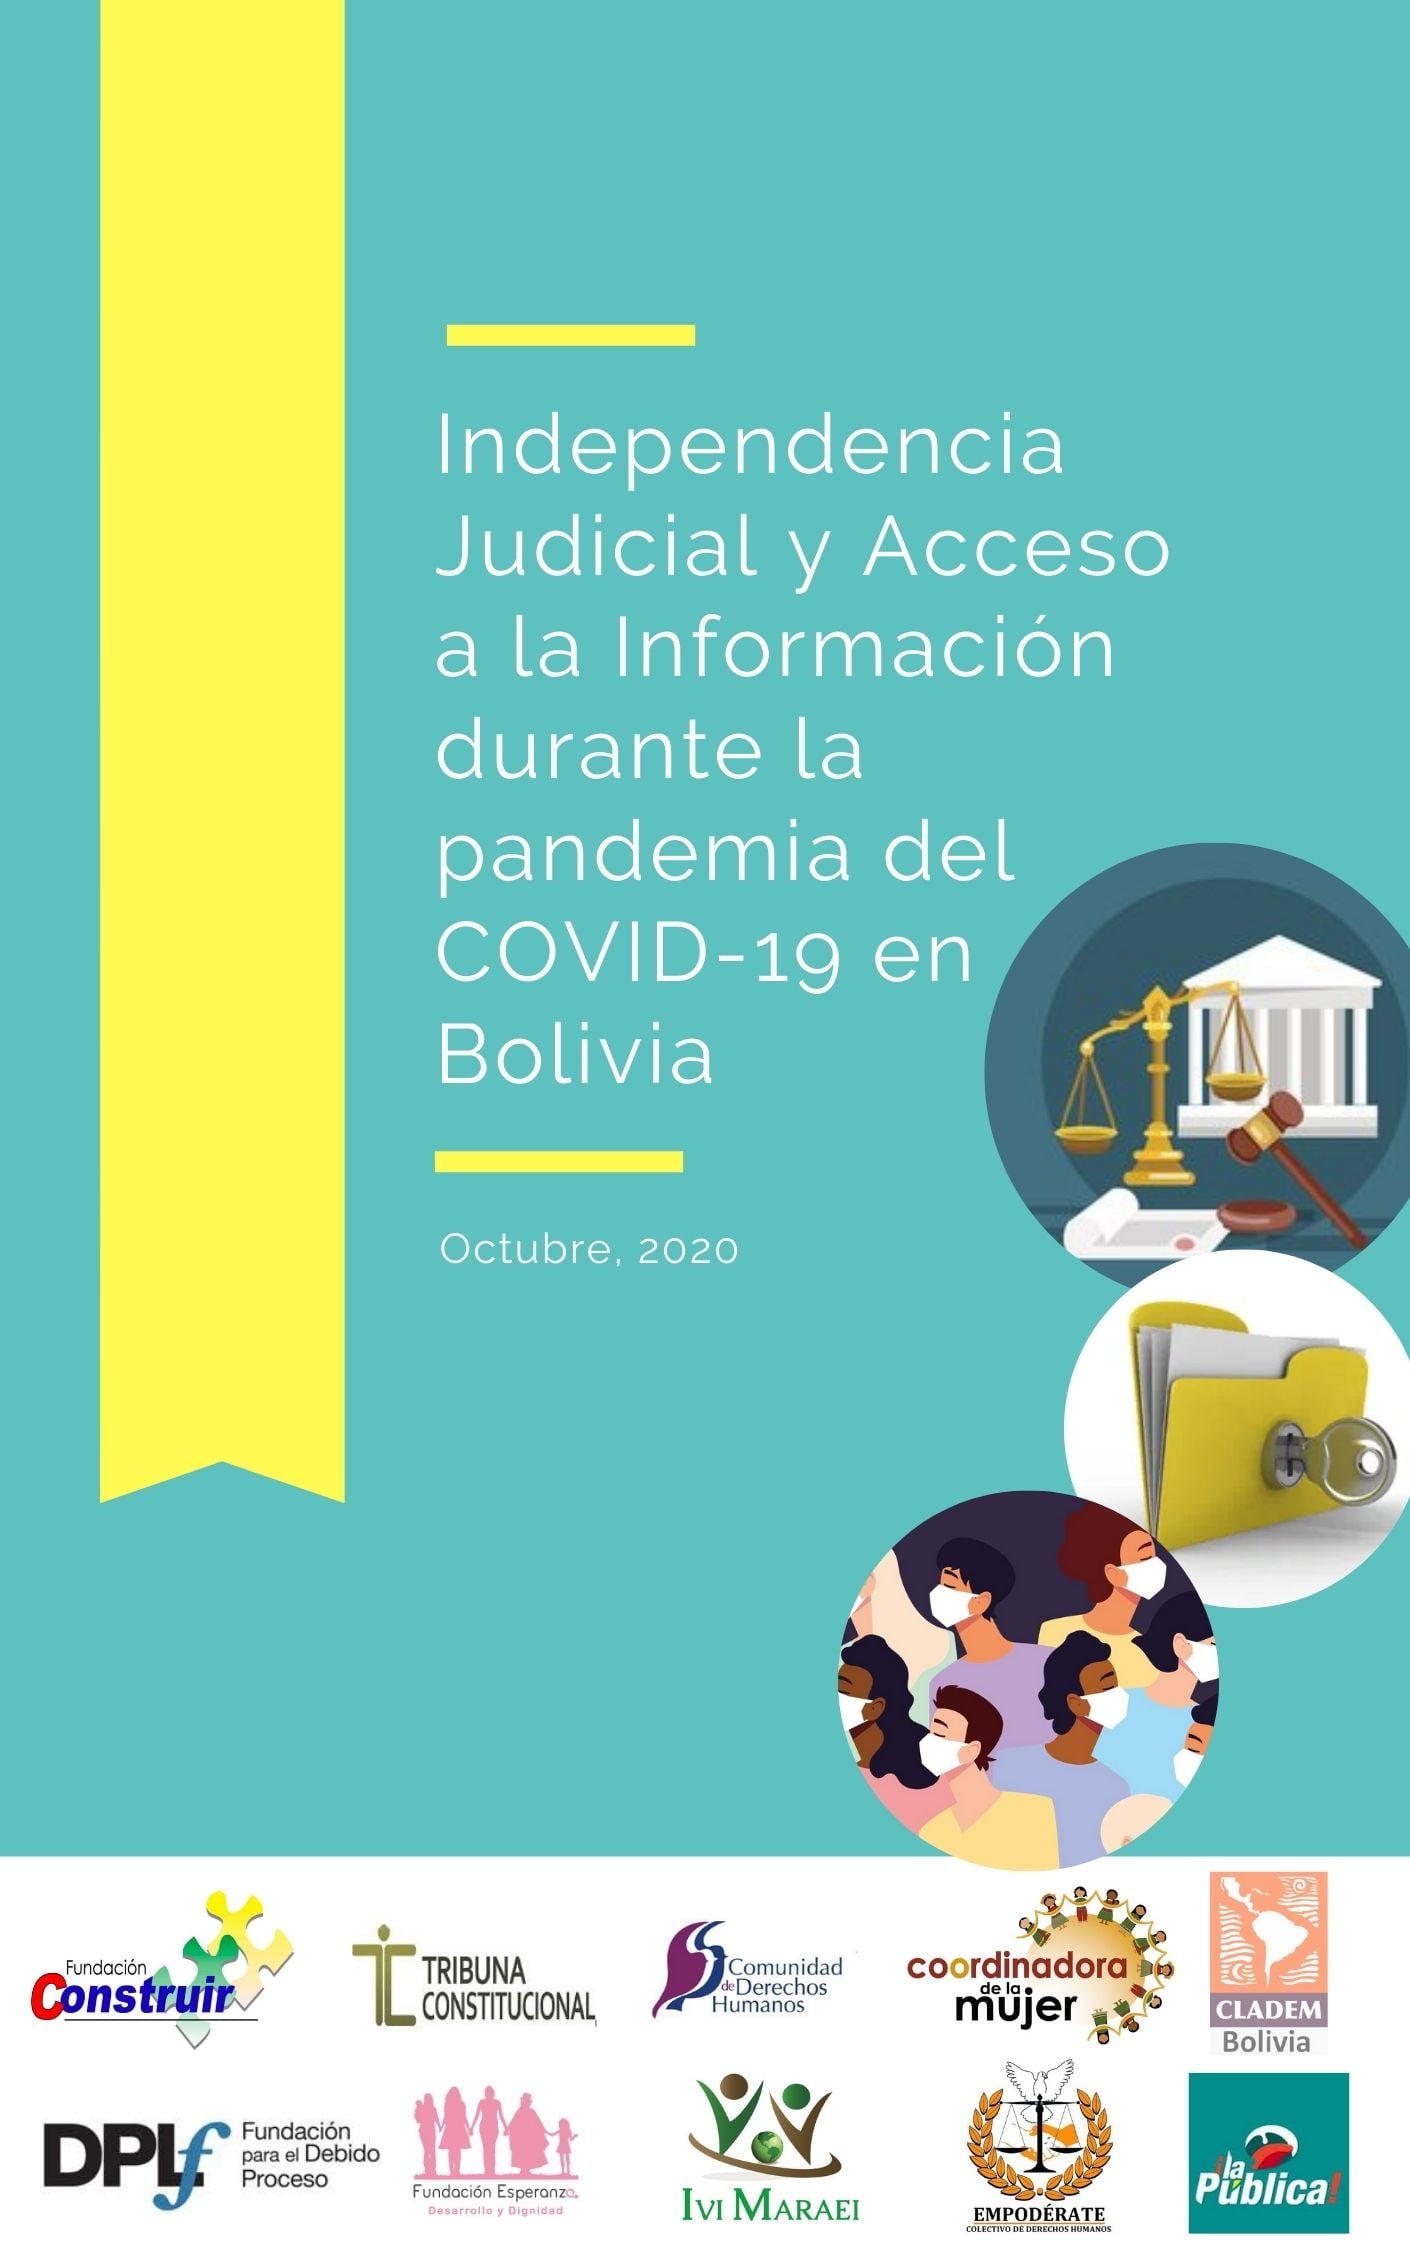 El Estado boliviano reconoce la necesidad de una ley de acceso a la información pública y que transformar la justicia para la población es un tema pendiente